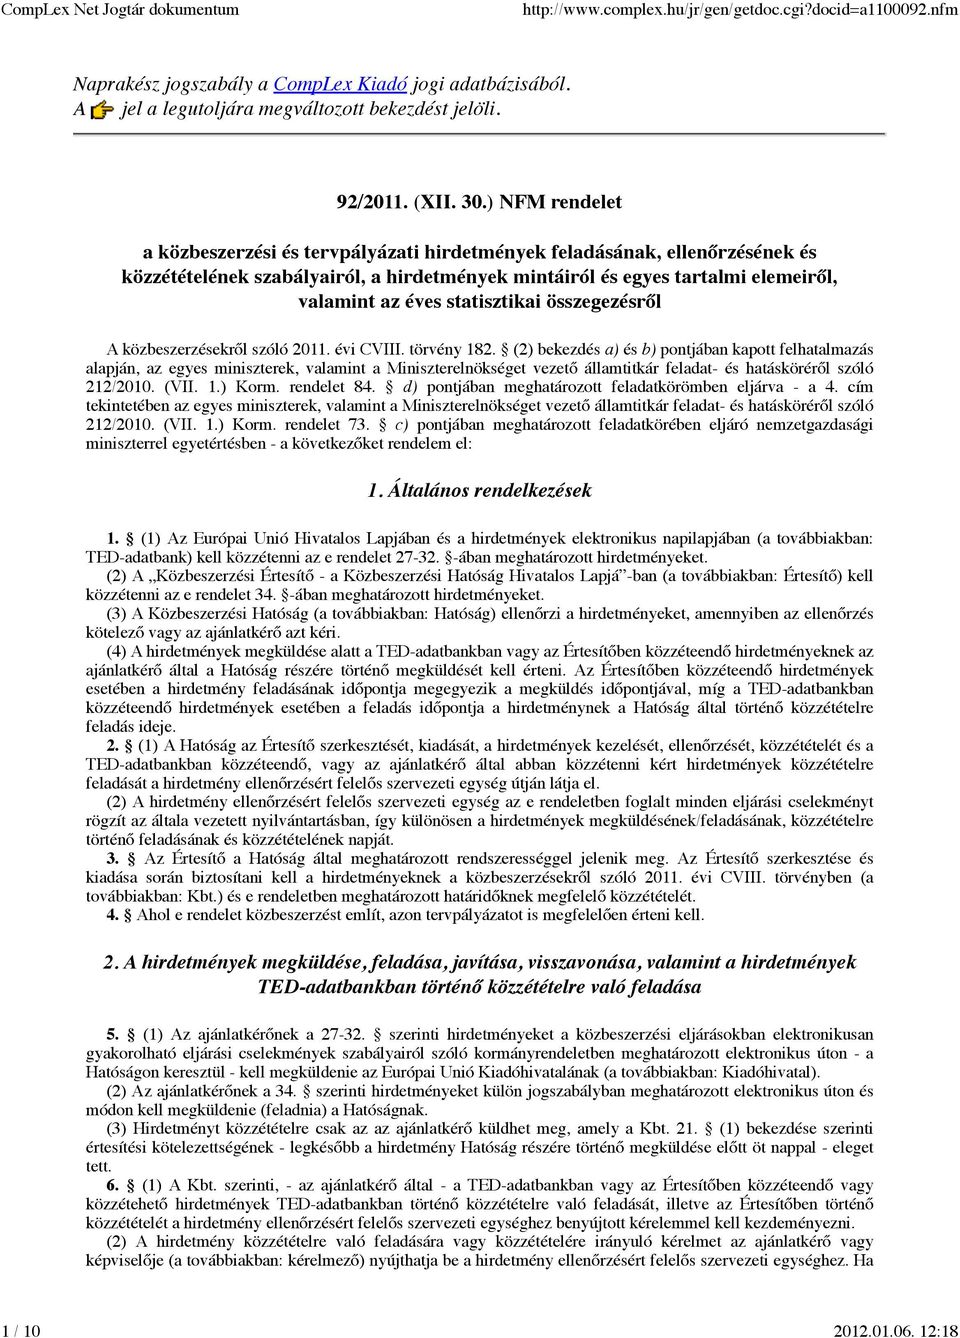 statisztikai összegezésről A közbeszerzésekről szóló 2011. évi CVIII. törvény 182.